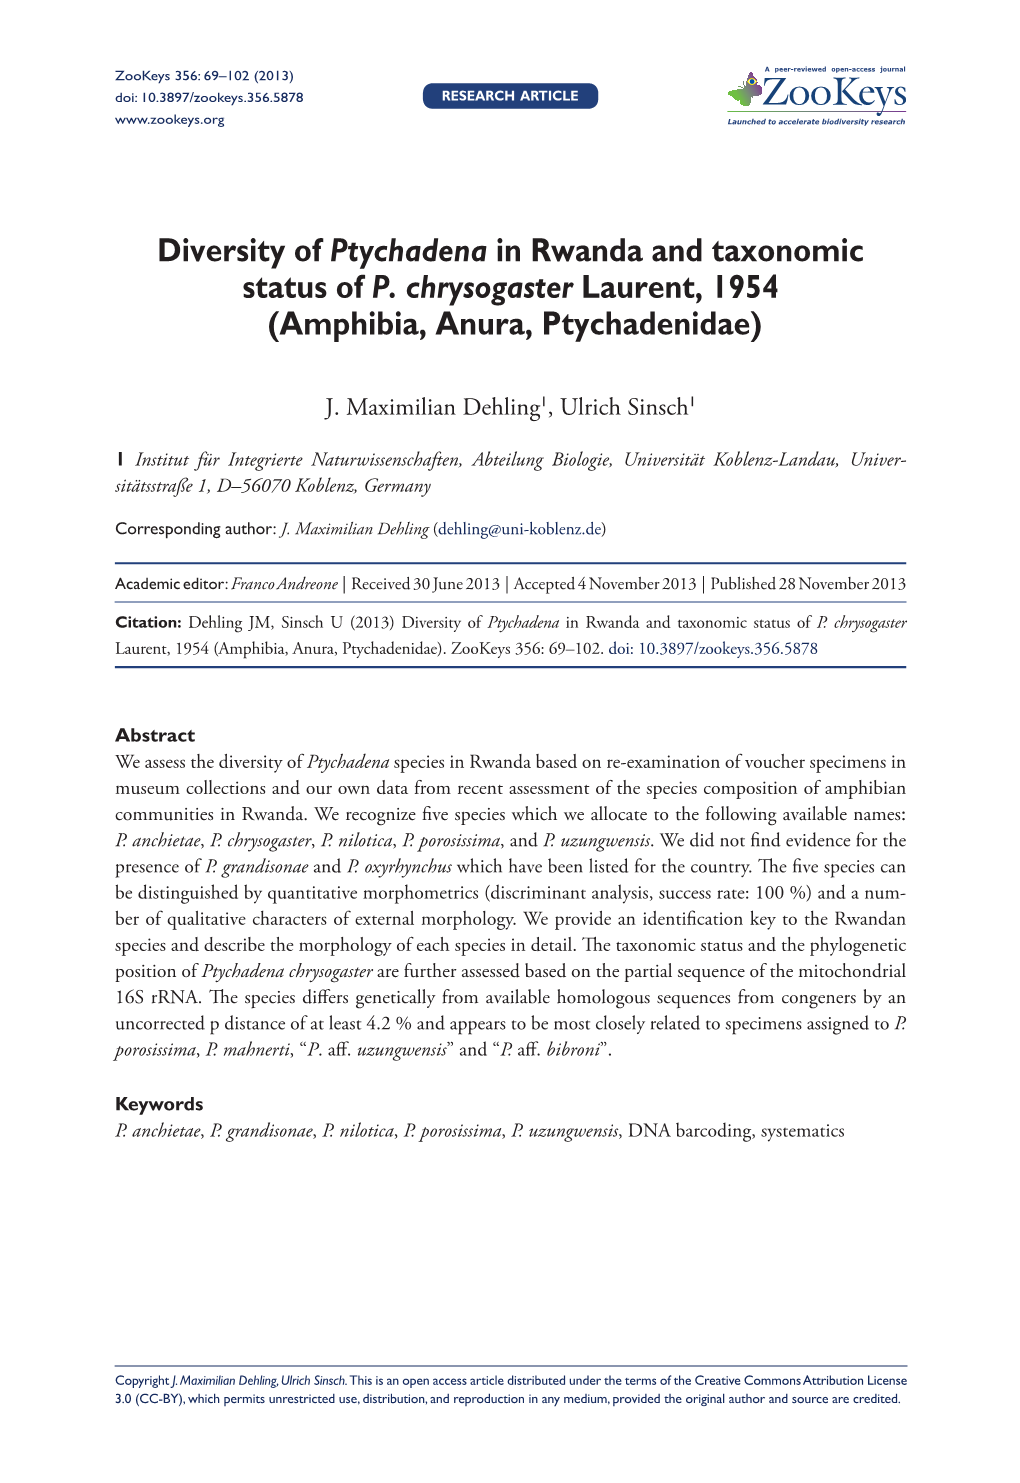 Diversity of Ptychadena in Rwanda and Taxonomic Status of P